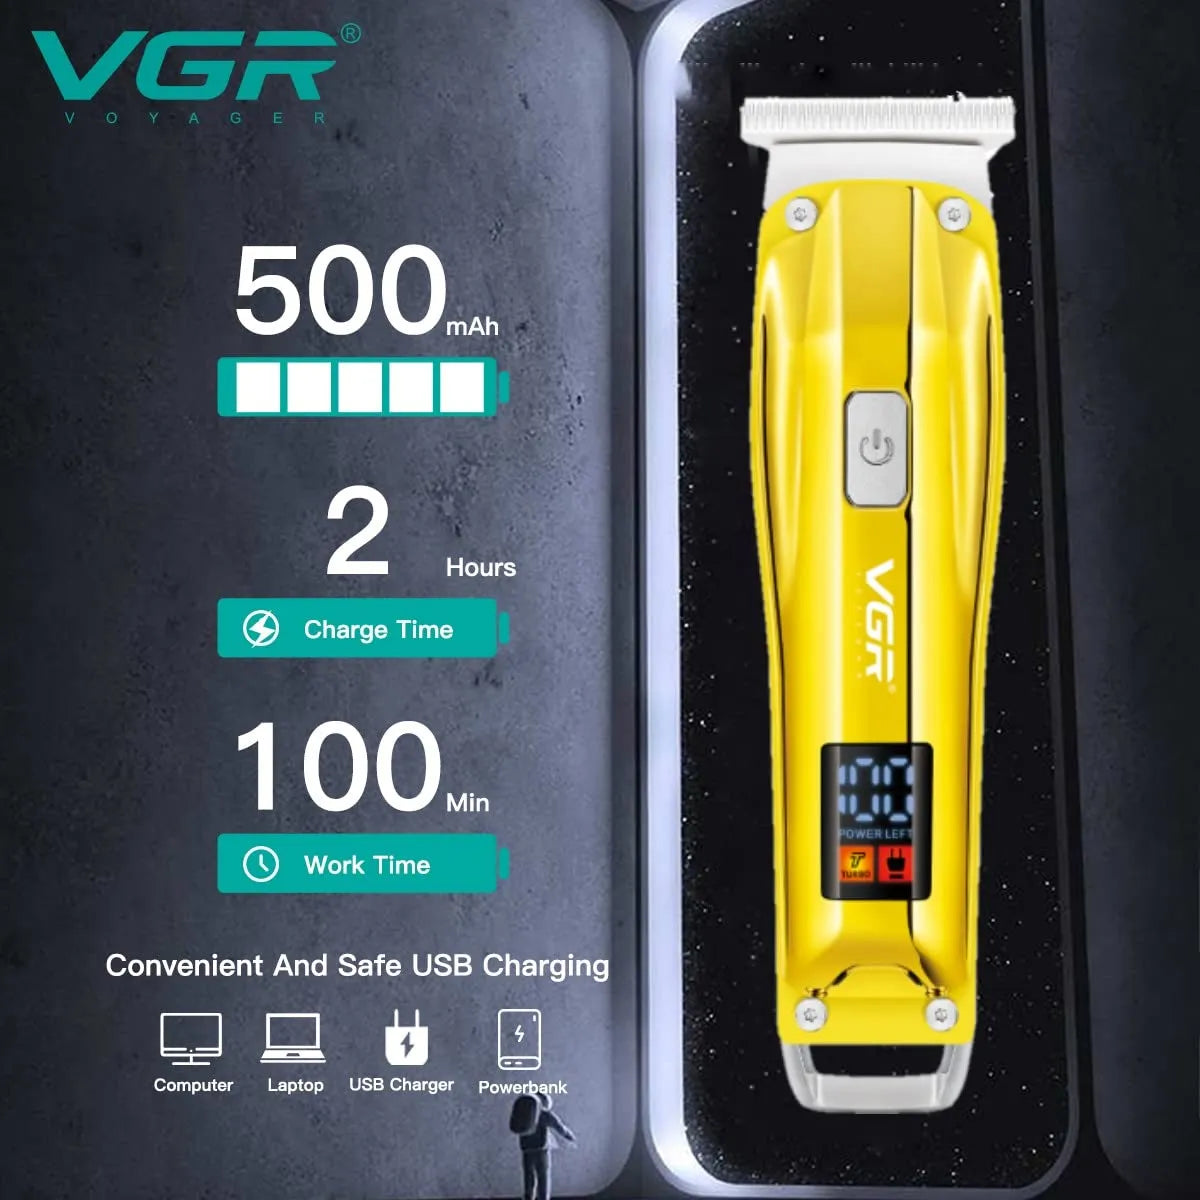 VGR, VGRindia, VGRofficial, VGR V-956